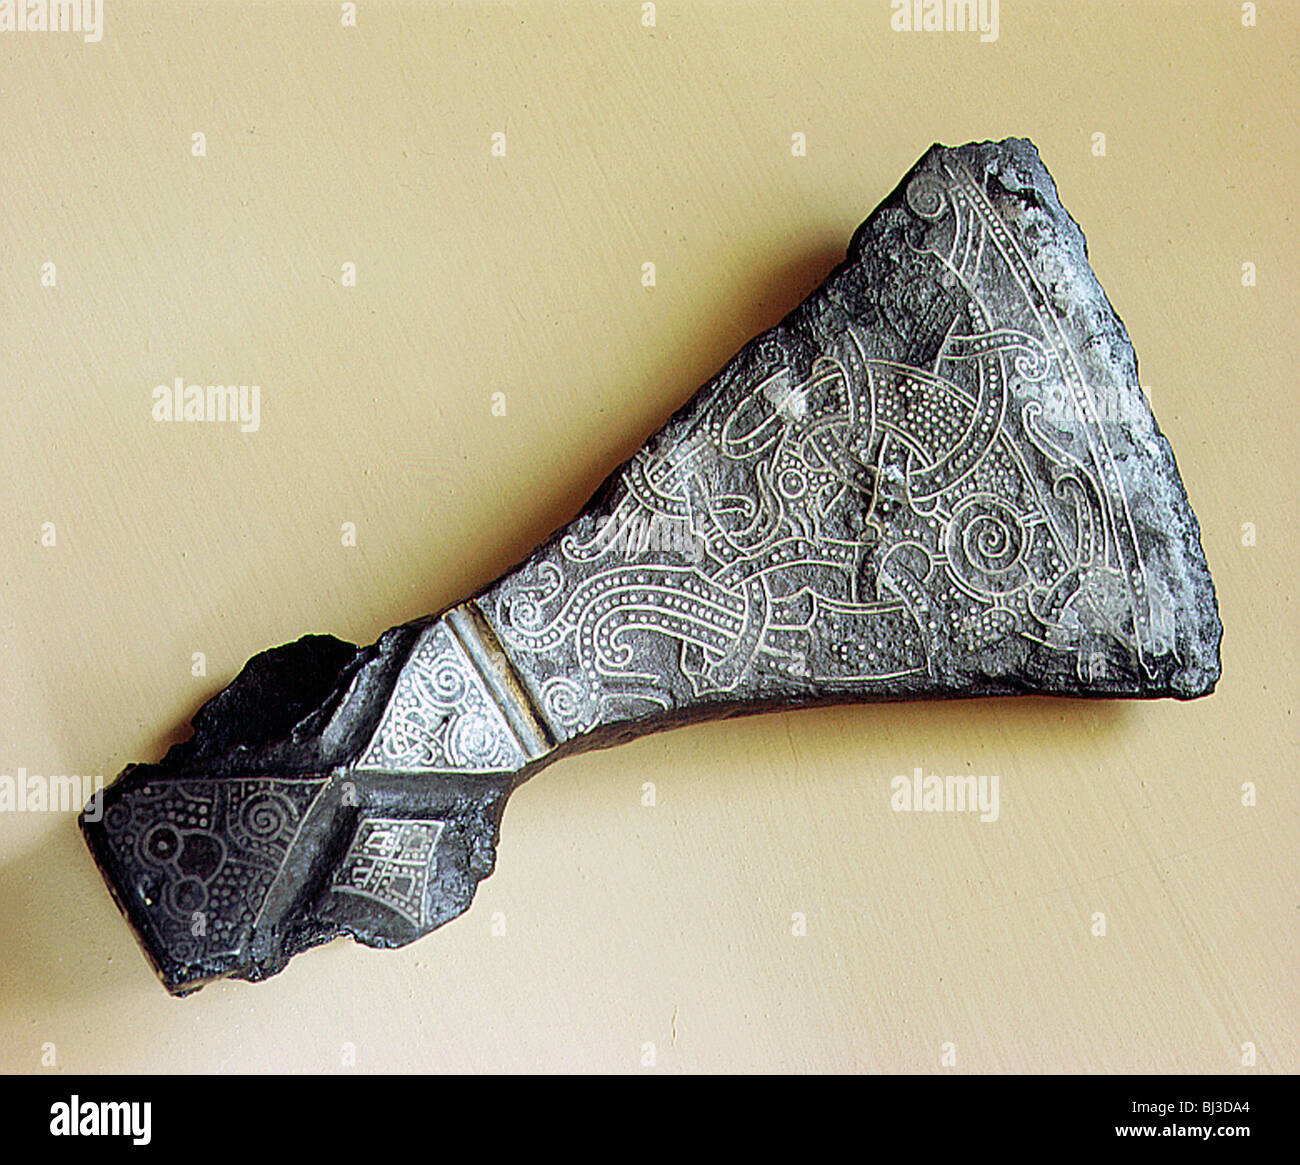 The great ceremonial axe from Mammen, Jutland, Denmark, Viking ...